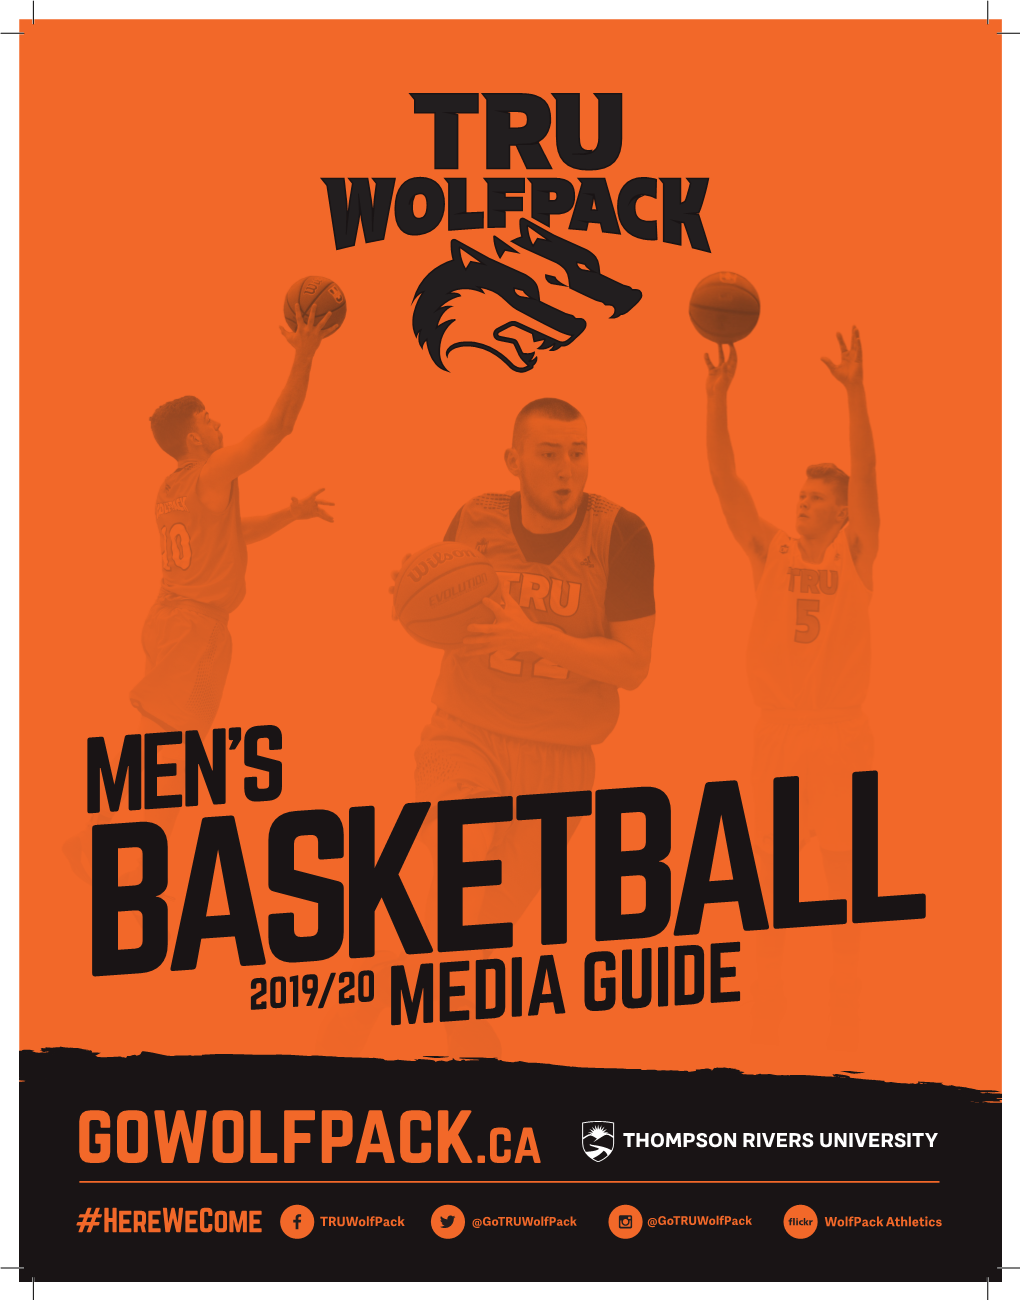 MEN's BASKETBALL 2019/20 MEDIA GUIDE Gowolfpack.Ca